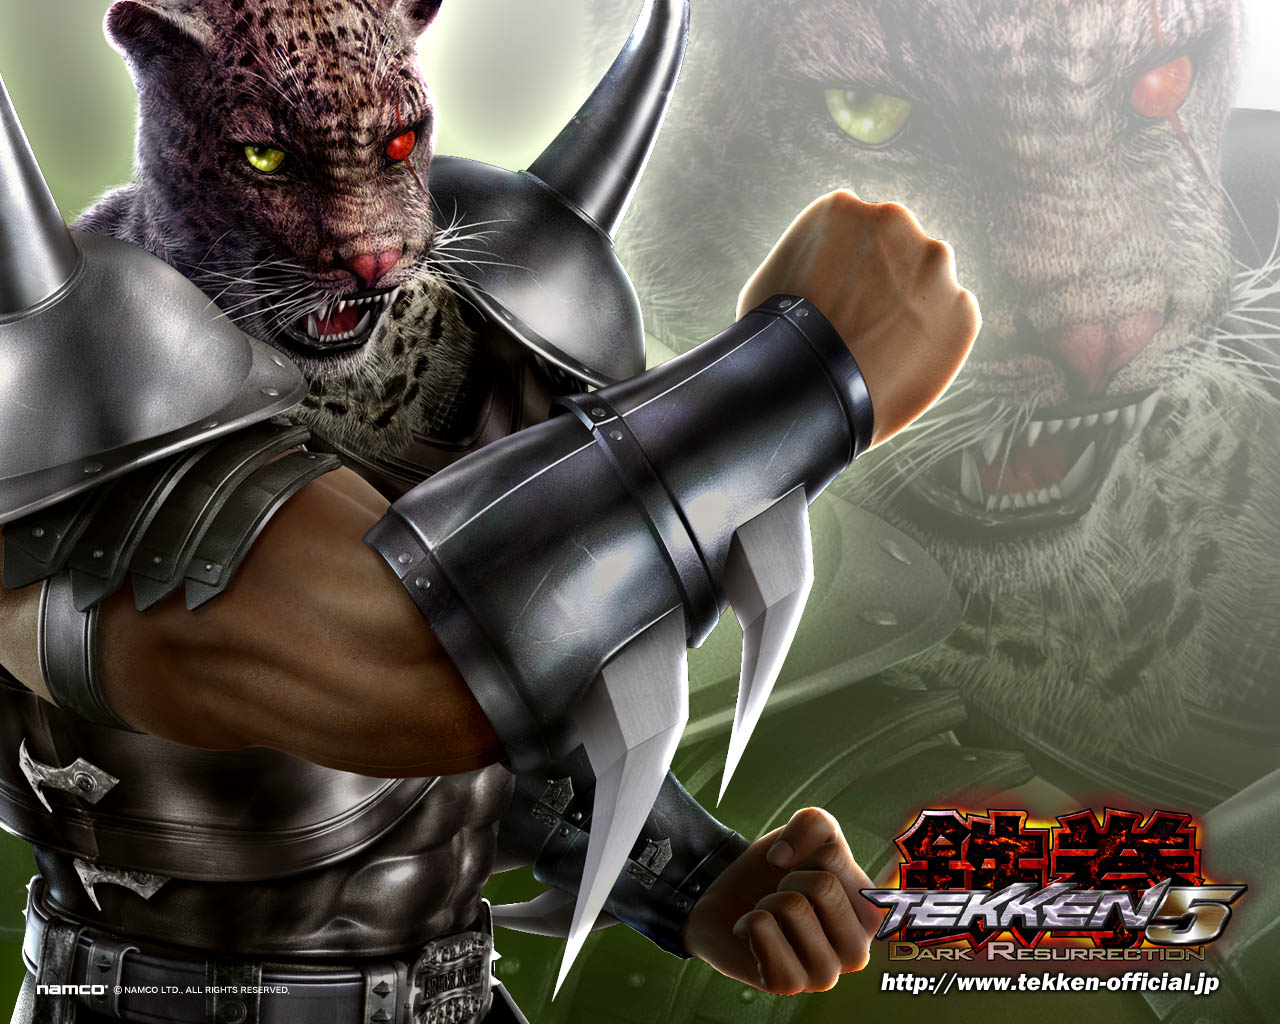  King   Tekken 5 Dark Resurrection Wallpaper Armor King Wallpaper